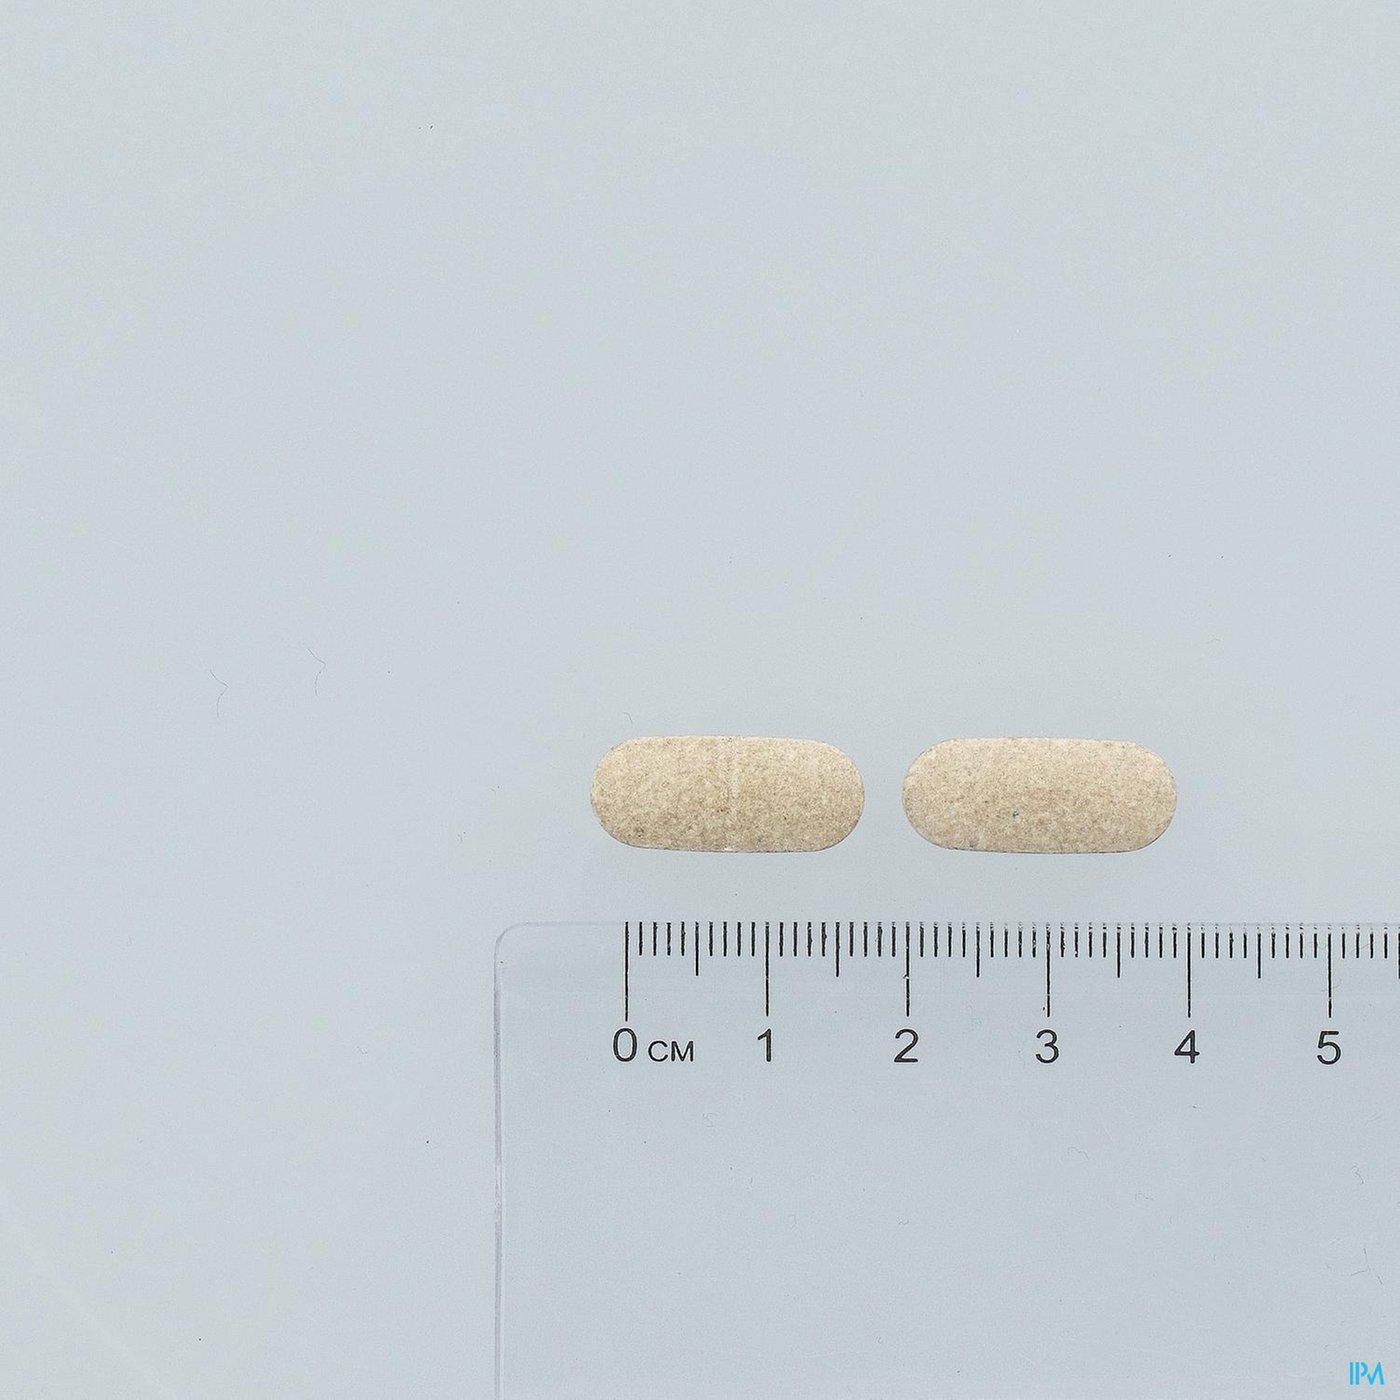 Androxir 30 TAB 3x10 BLISTERS pillshot